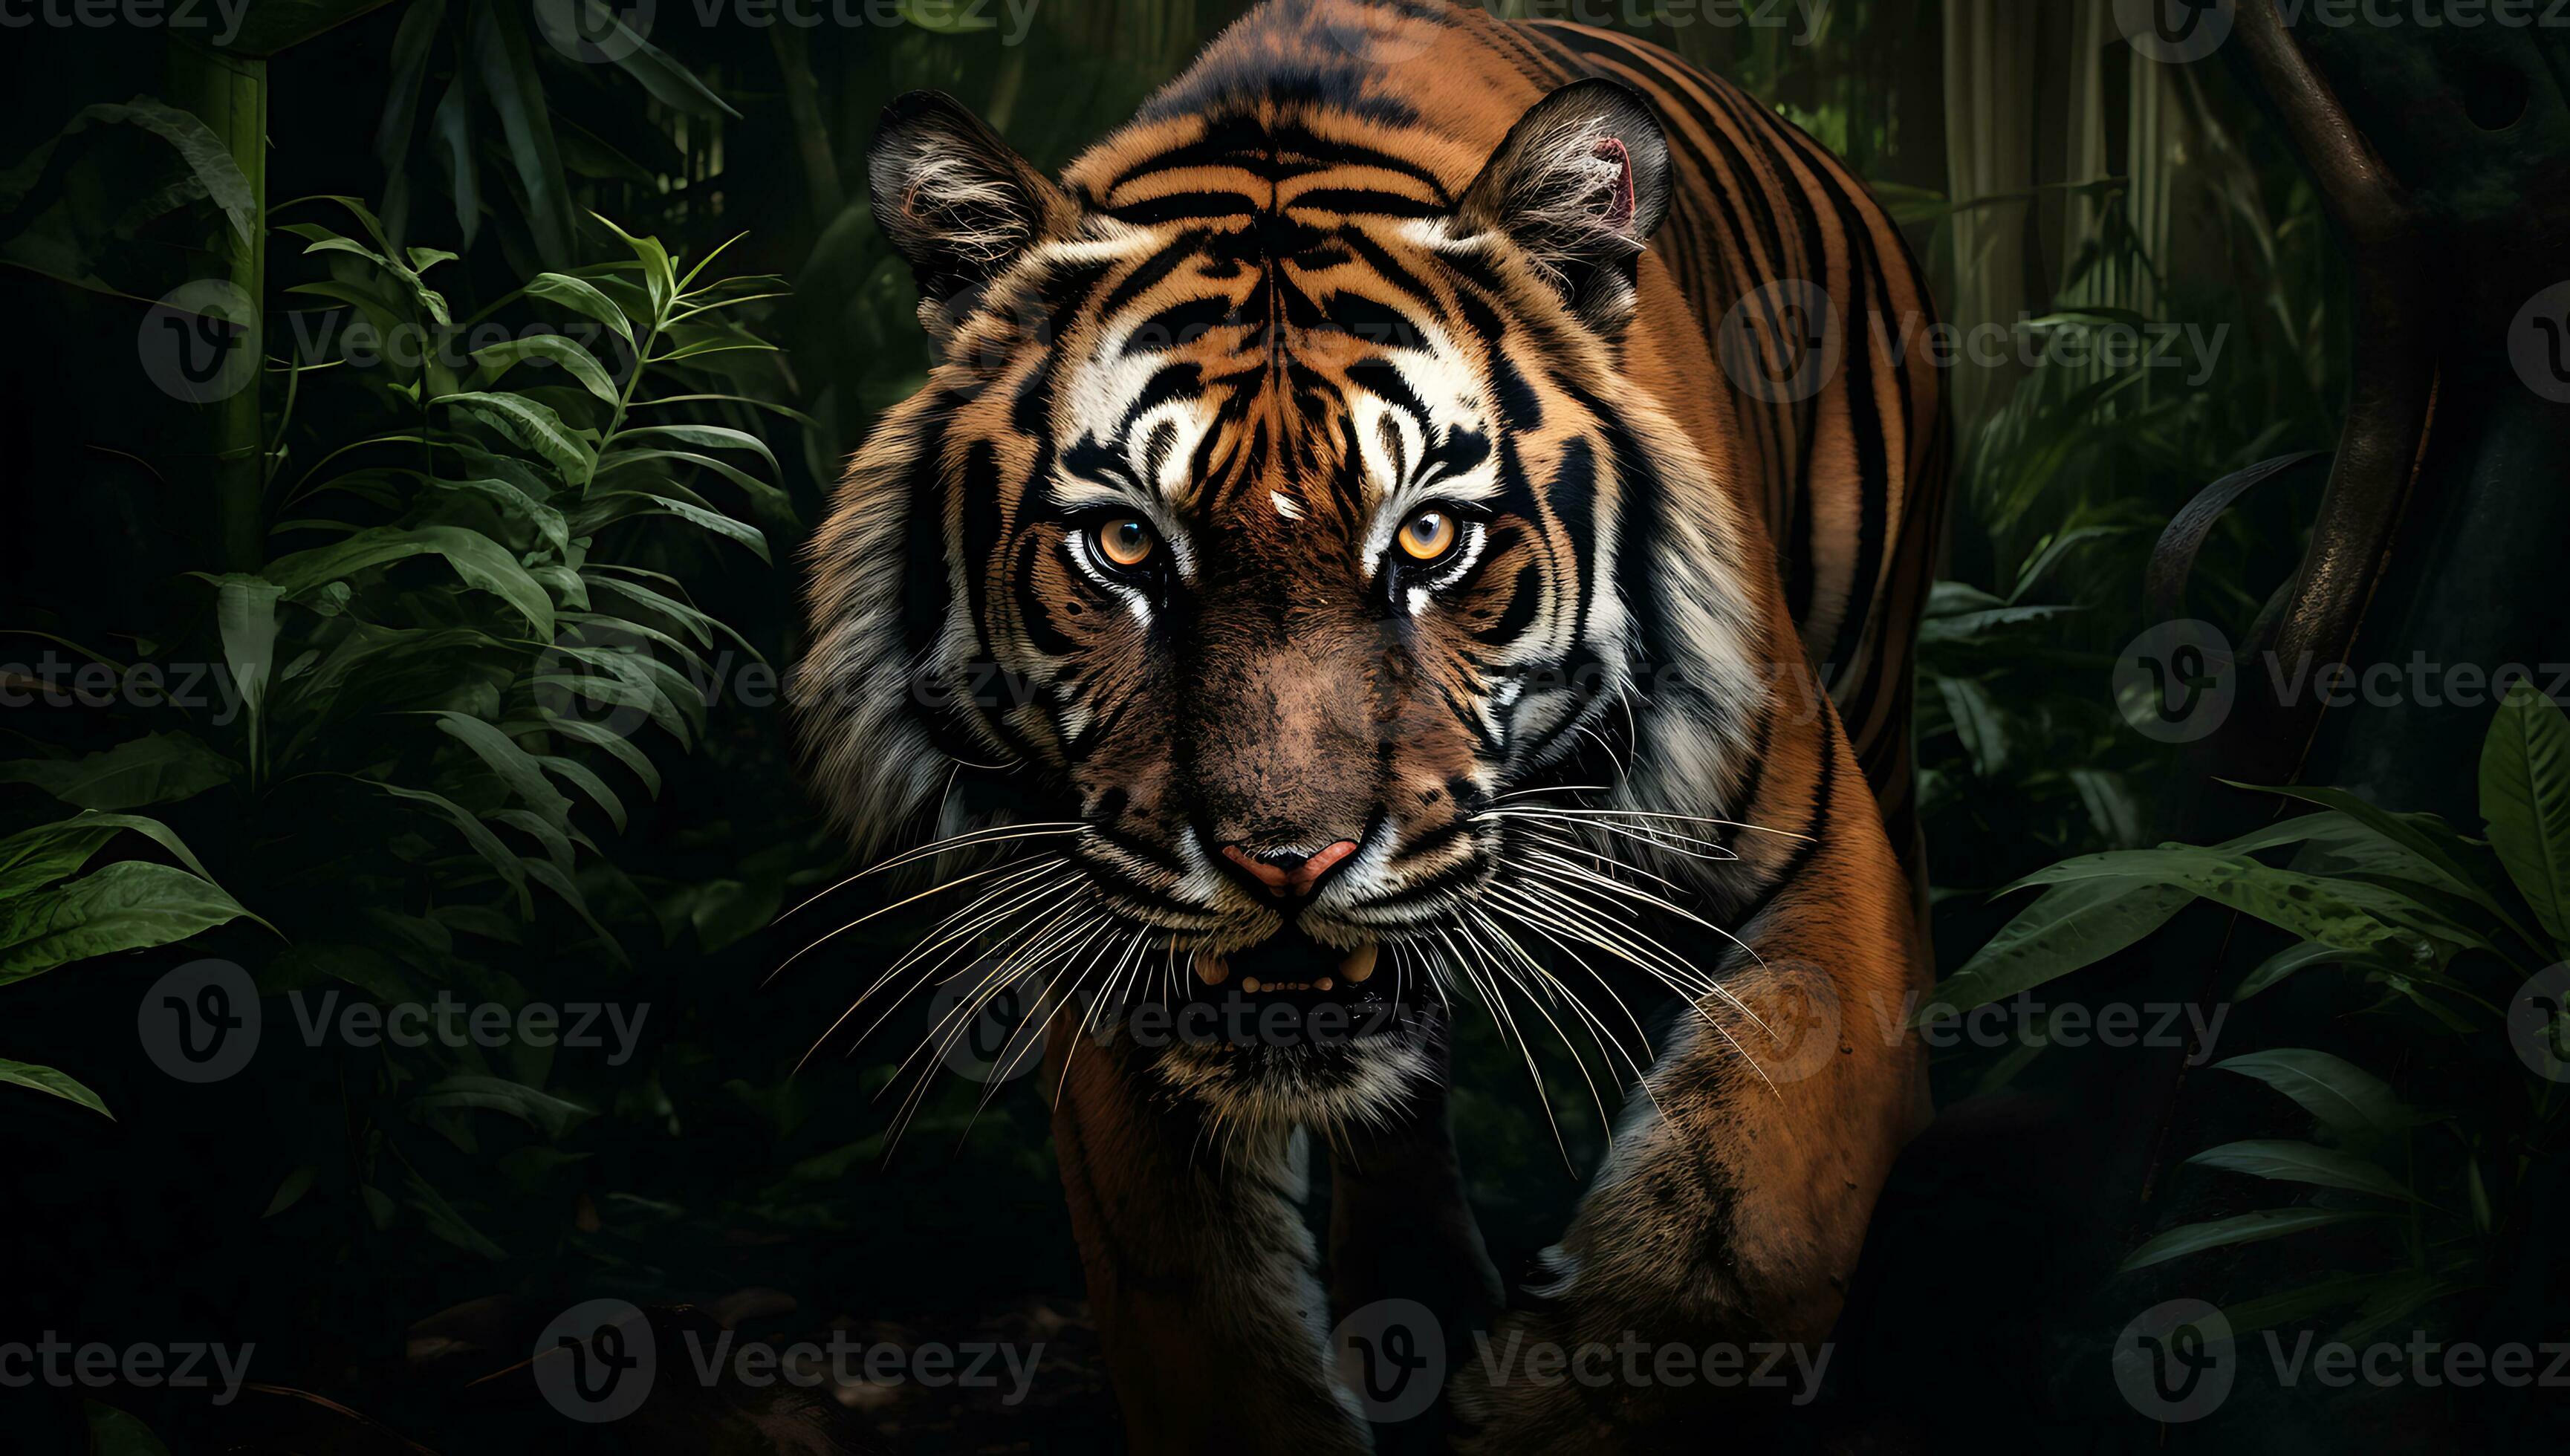 Coque Tigre 3D - AnimaCase